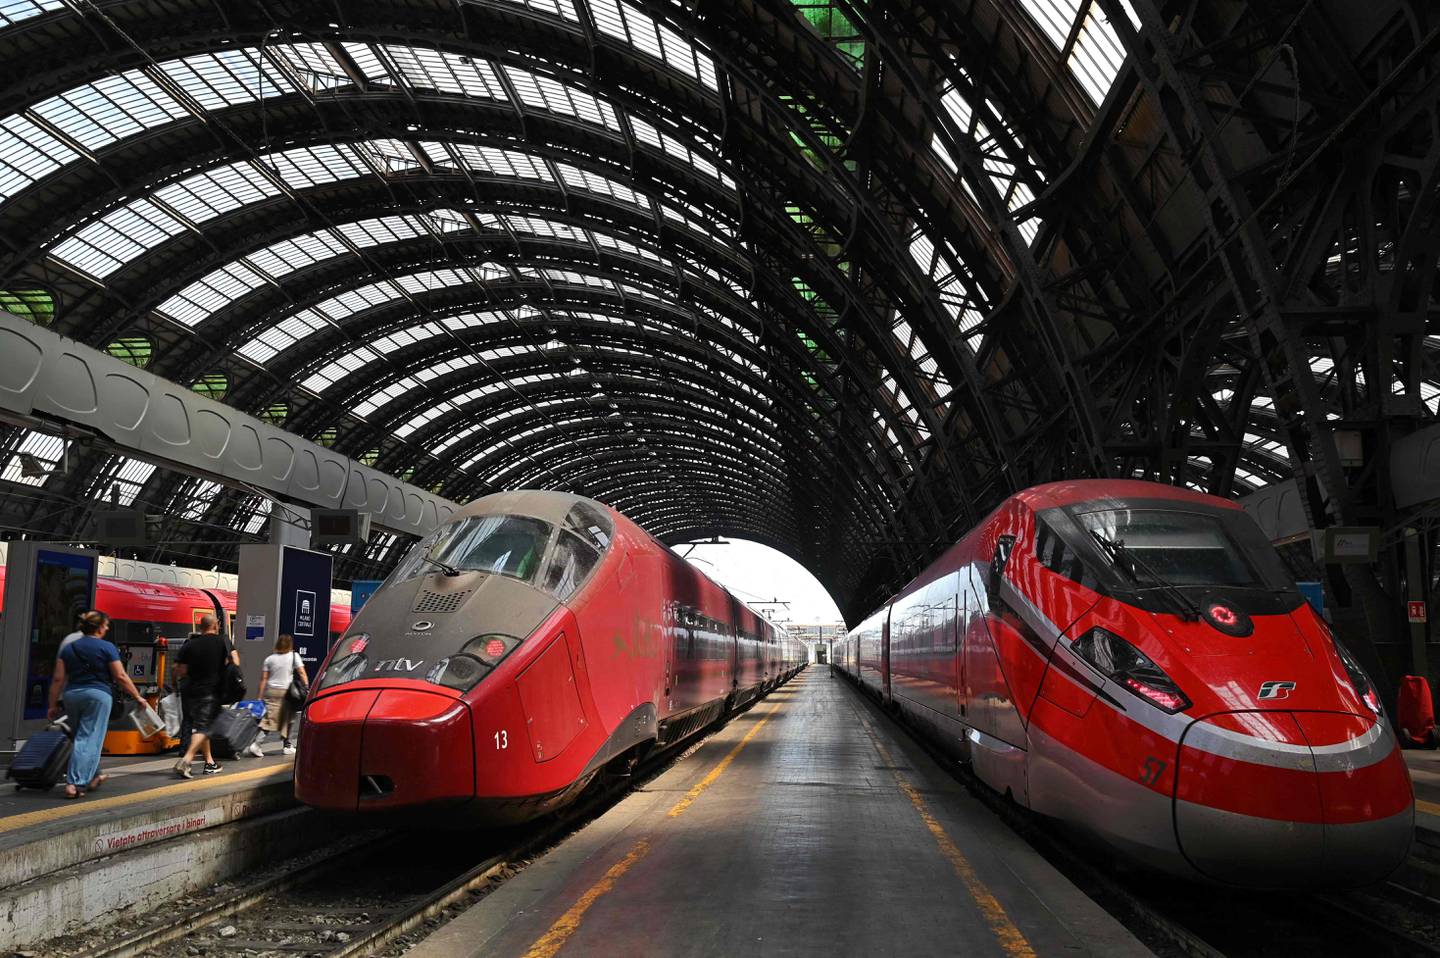 Italia er blant de europeiske landene som allerede har mye høyhastighetsbane. 921 kilometer er i bruk og 327 kilometer er under bygging der, ifølge Den internasjonale jernbaneunionen – UIC. Bildet viser høyhastighetstog på sentralstasjonen i Milano i juli i år.